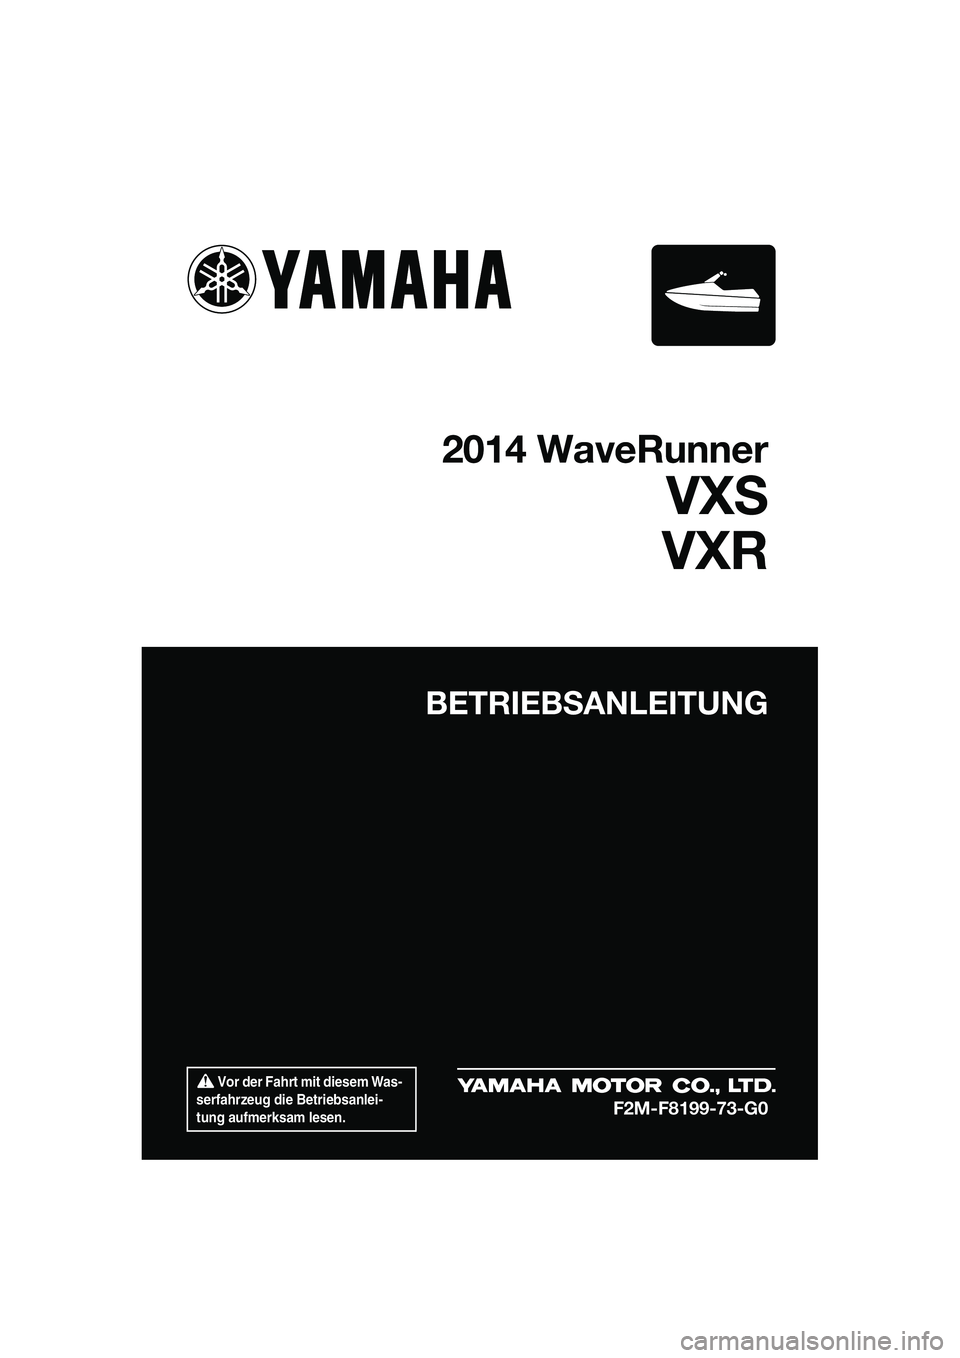 YAMAHA VXR 2014  Betriebsanleitungen (in German)  Vor der Fahrt mit diesem Was-
serfahrzeug die Betriebsanlei-
tung aufmerksam lesen.
BETRIEBSANLEITUNG
2014 WaveRunner
VXS
VXR
F2M-F8199-73-G0
UF2M73G0.book  Page 1  Friday, August 2, 2013  11:31 AM 